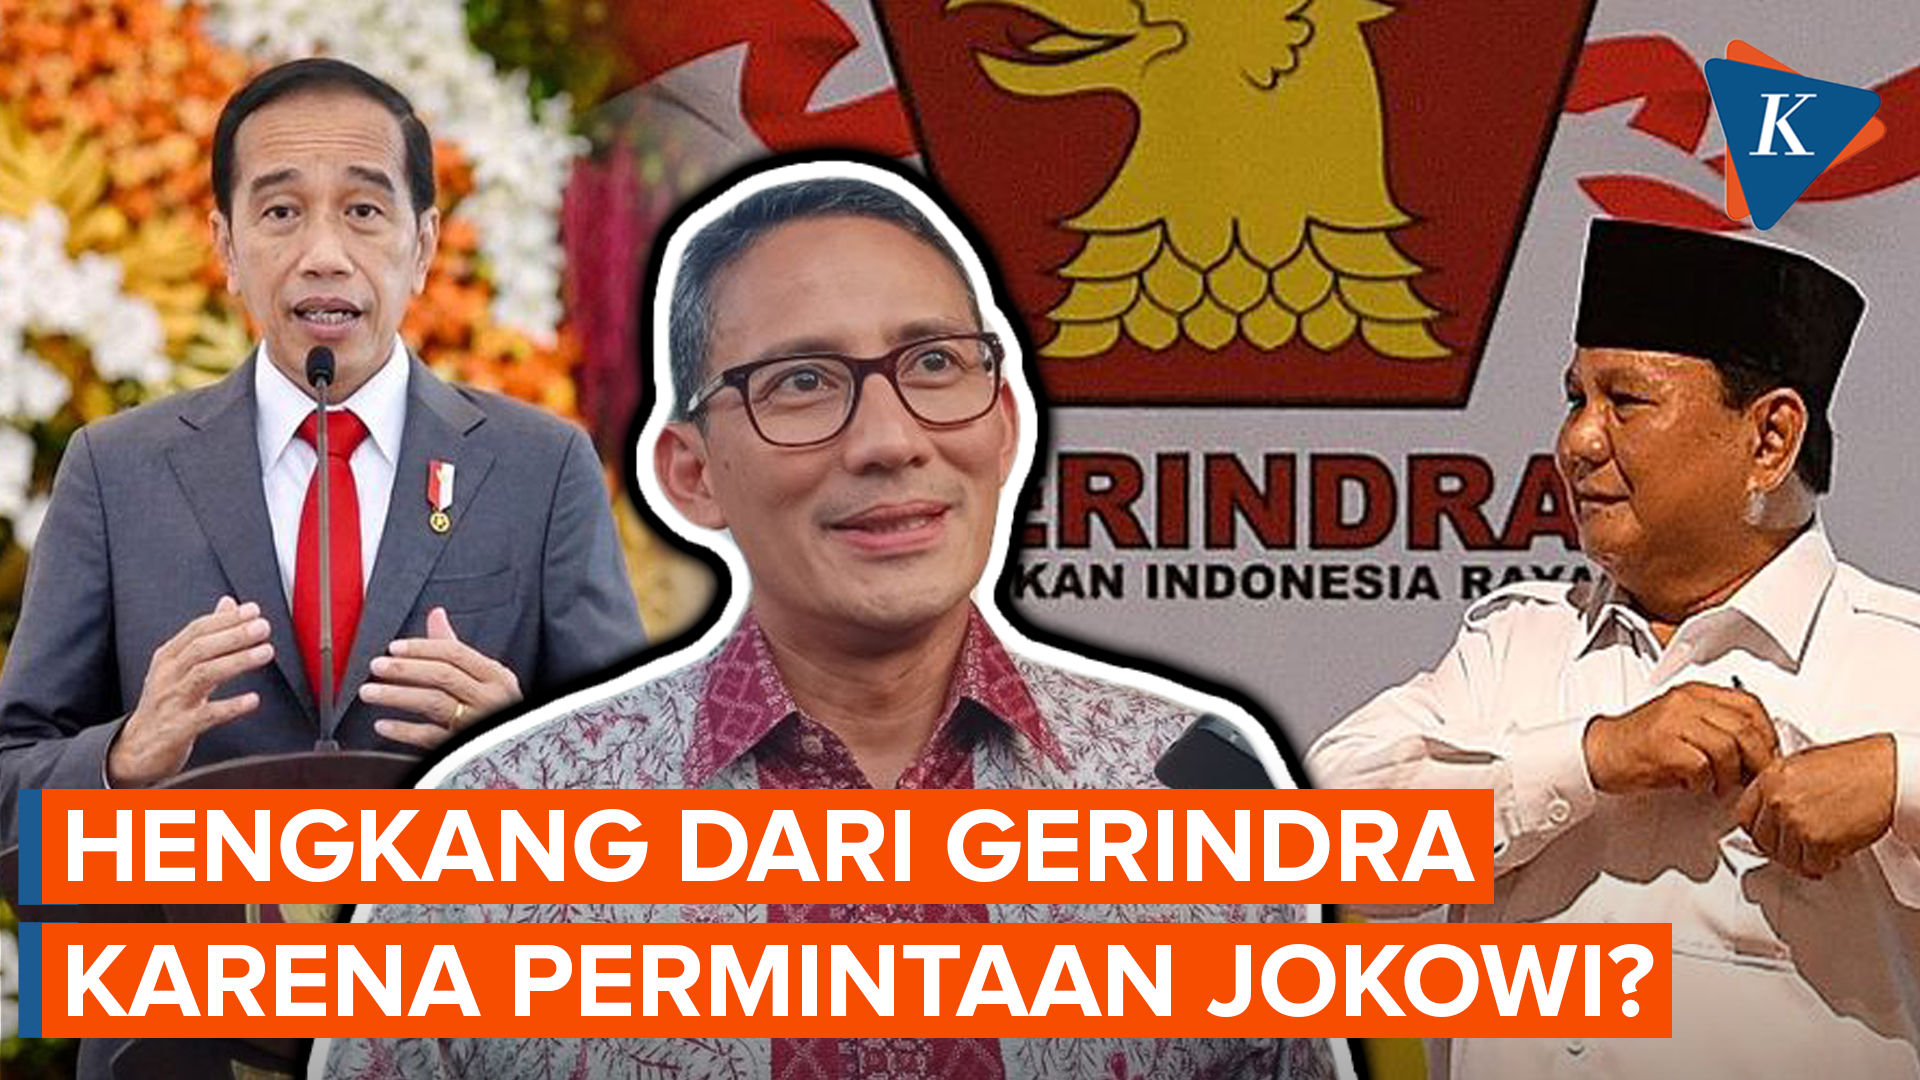 Kata Sandiaga Usai Disebut Hengkang dari Gerindra karena Jokowi